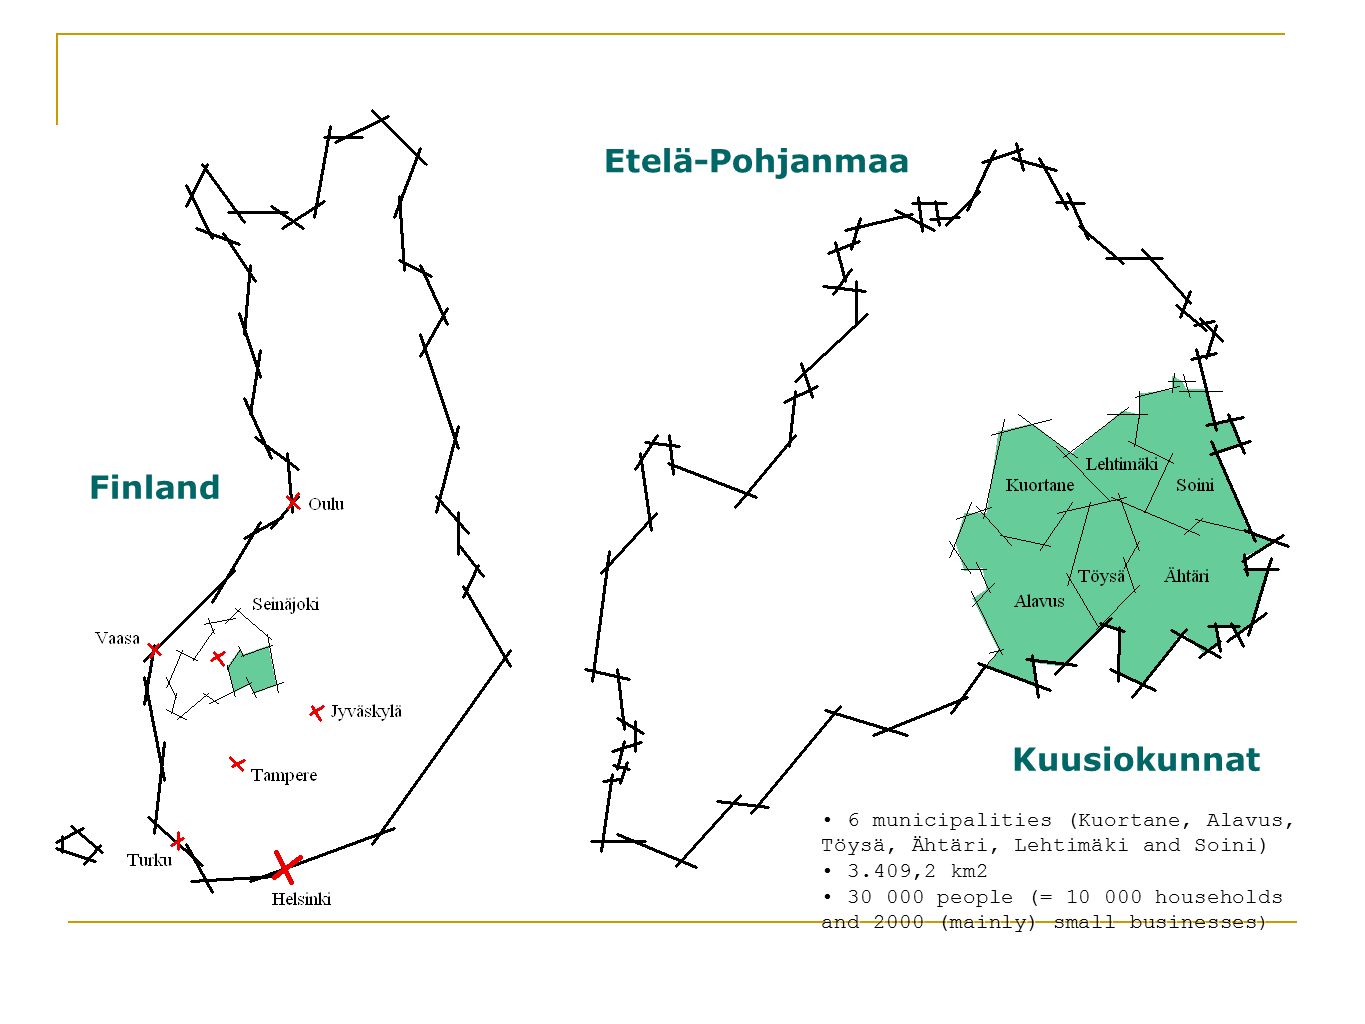 Finland Etelä-Pohjanmaa Kuusiokunnat 6 municipalities (Kuortane, Alavus, Töysä, Ähtäri, Lehtimäki and Soini) 3.409,2 km people (= households and 2000 (mainly) small businesses ) 6 municipalities (Kuortane, Alavus, Töysä, Ähtäri, Lehtimäki and Soini) 3.409,2 km people (= households and 2000 (mainly) small businesses )